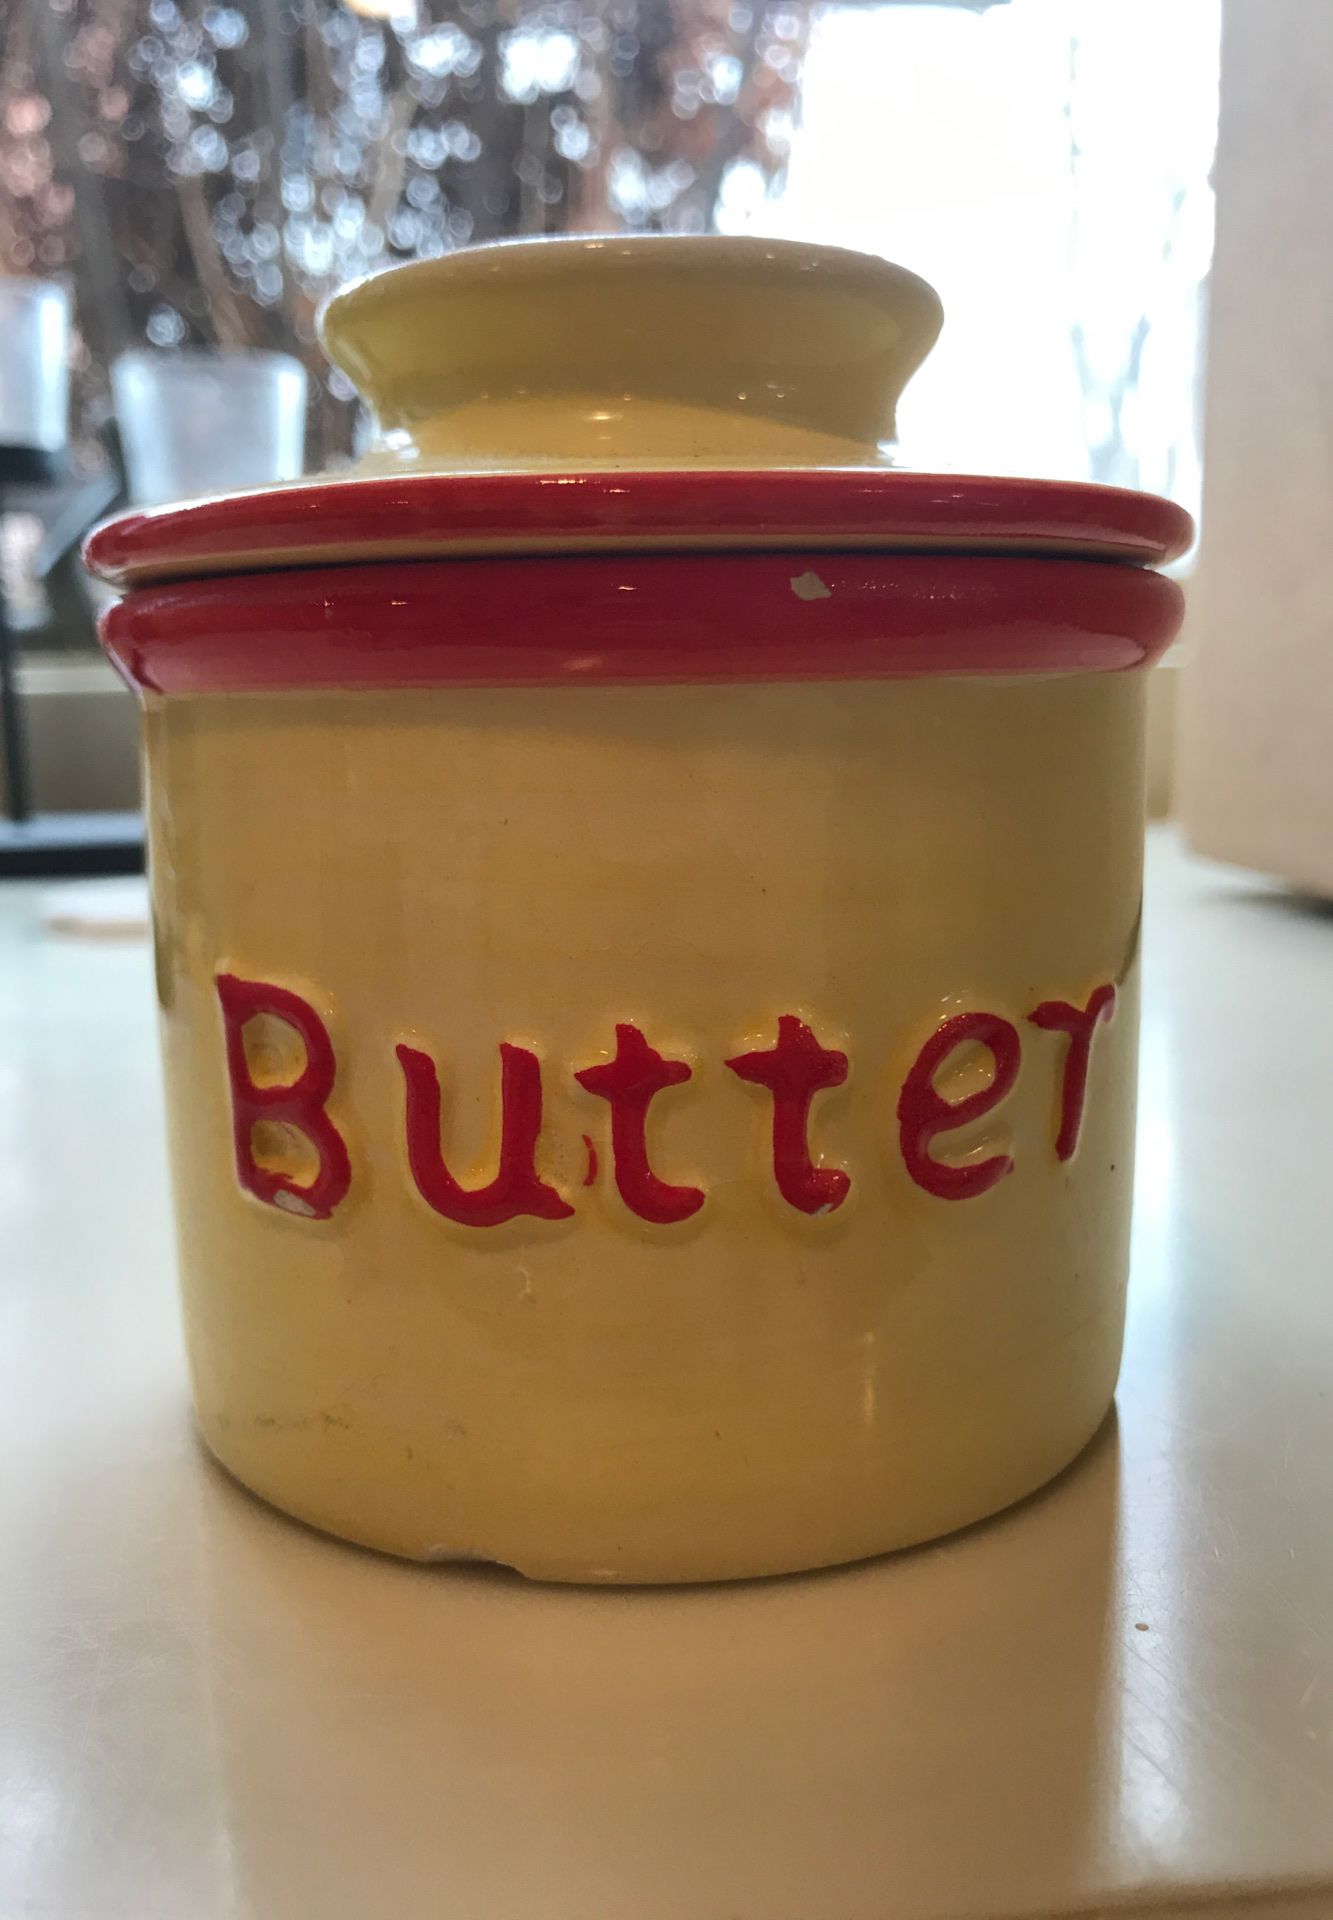 Butter Bell